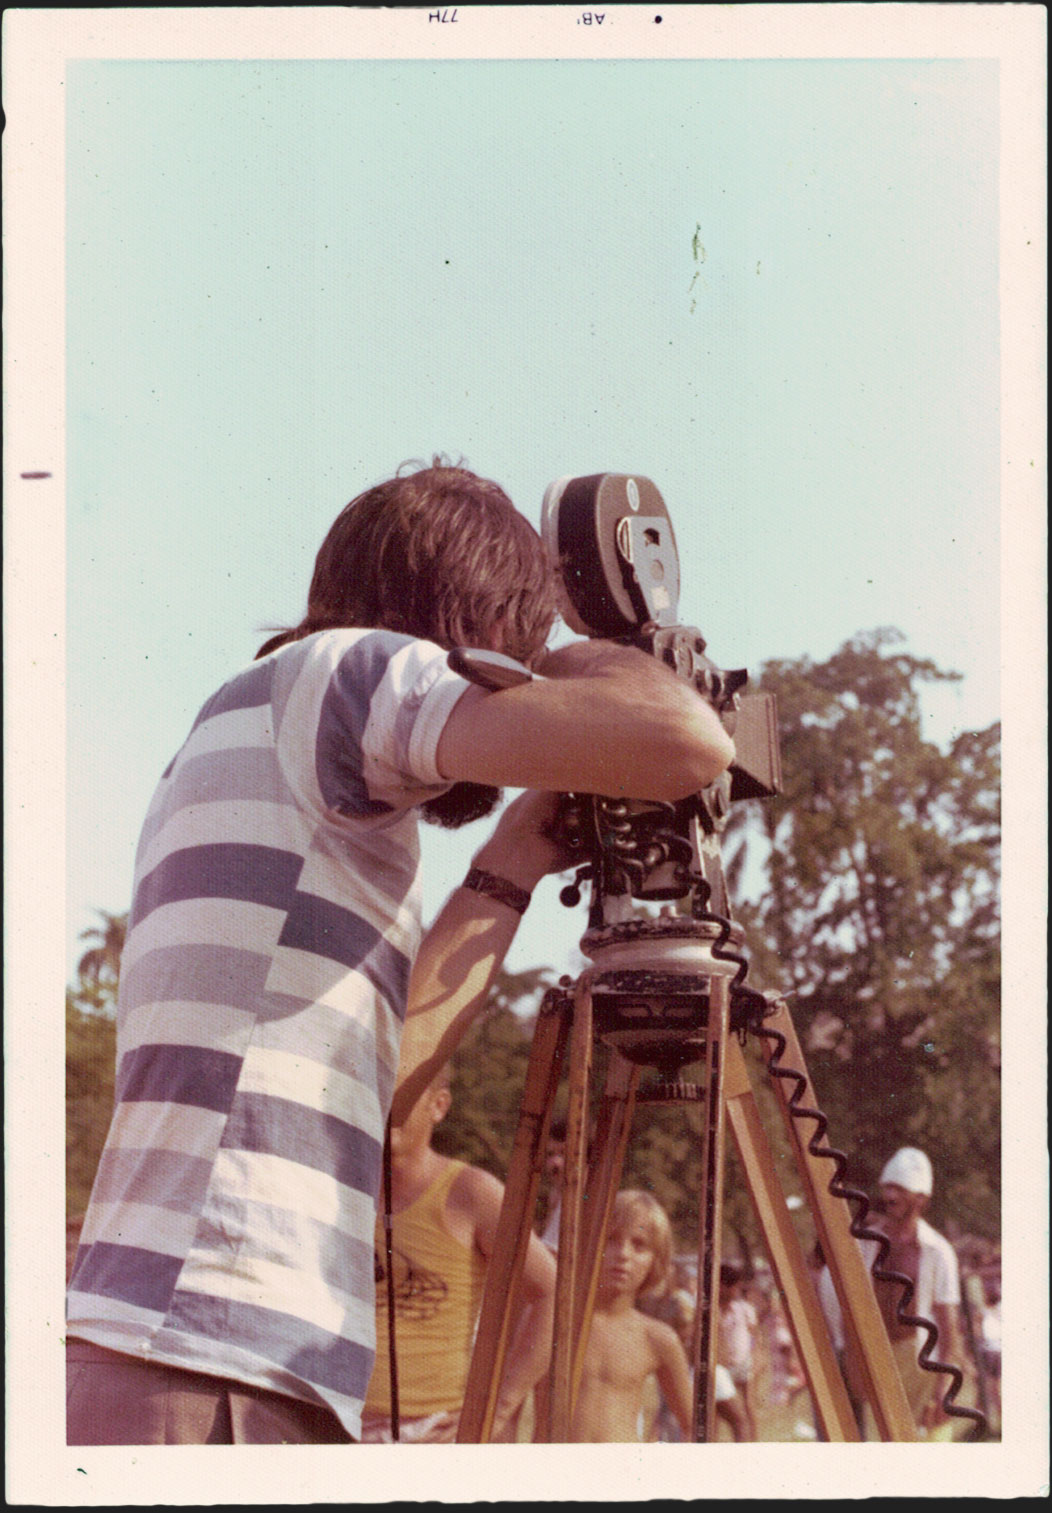 Ramon Alvarado, de costas, opera uma câmera cinematográfica que está sob um tripé. Ao fundo, uma criança olha para o cineasta e seu equipamento e há outros dois homens à sua volta. Ambiente externo, com céu e árvores ao fundo. Fotógrafo(a) não identificado(a). 